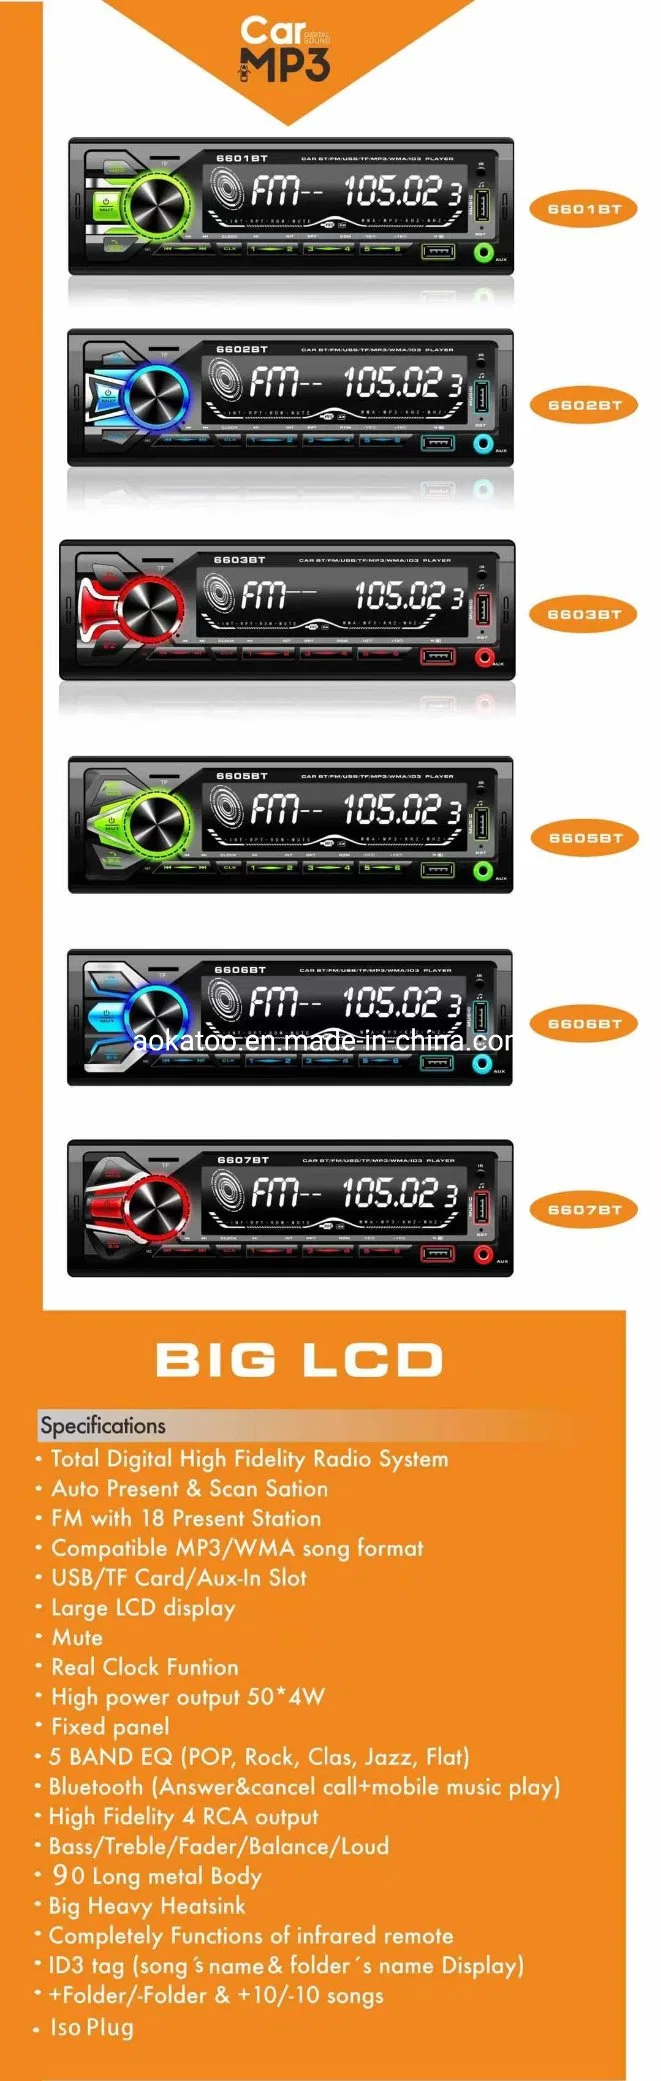 Большой ЖК-экран Car MP3 с технологией Bluetooth